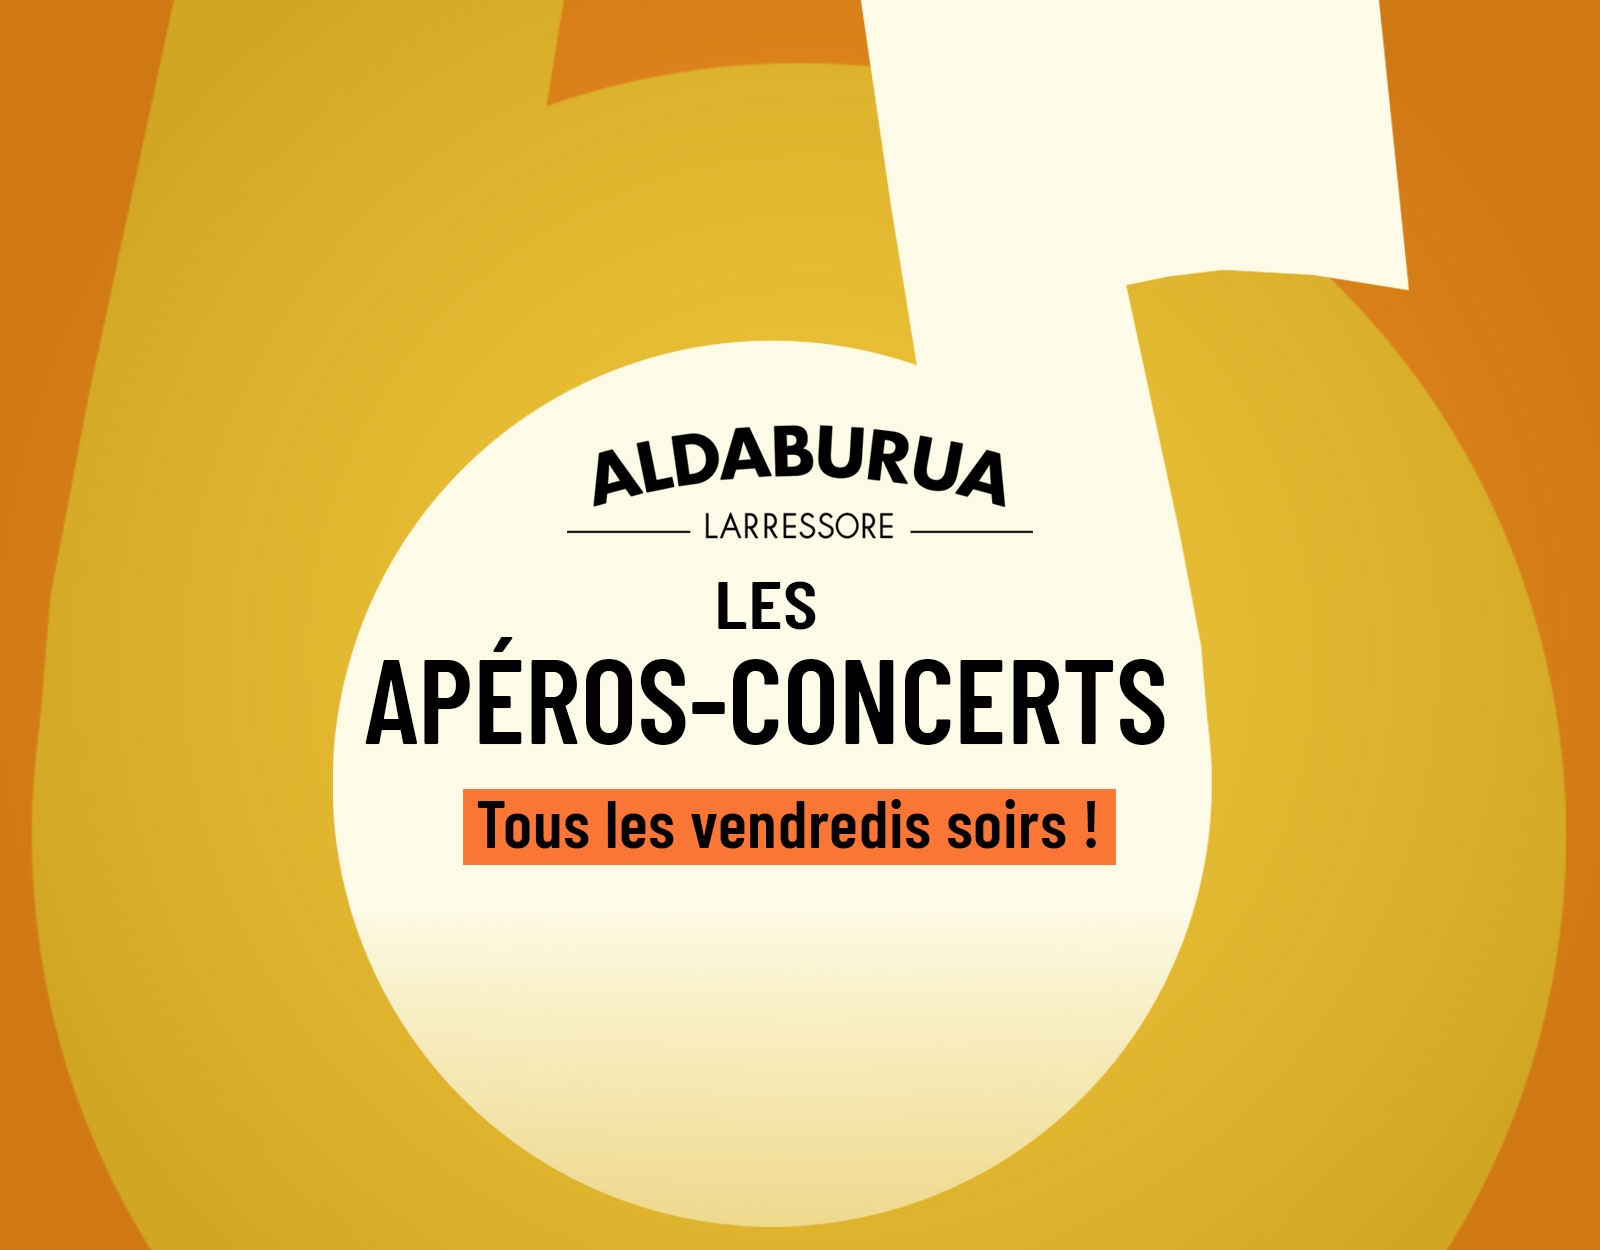 Apéros-concerts à l'auberge Aldaburua - Larressore